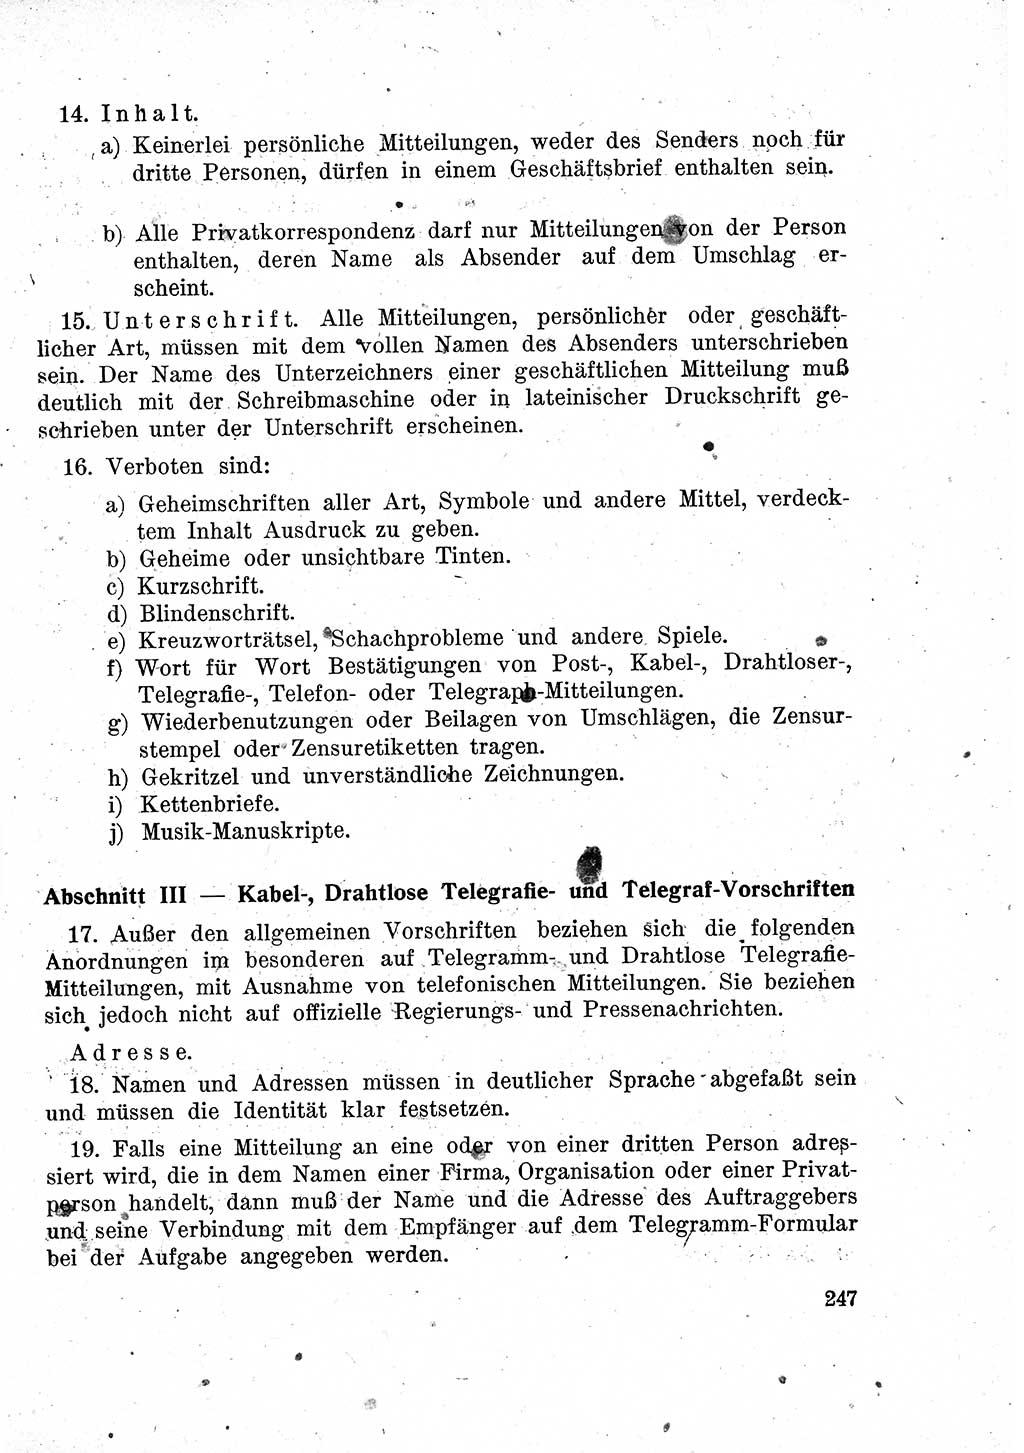 Das Recht der Besatzungsmacht (Deutschland), Proklamationen, Deklerationen, Verordnungen, Gesetze und Bekanntmachungen 1947, Seite 247 (R. Bes. Dtl. 1947, S. 247)